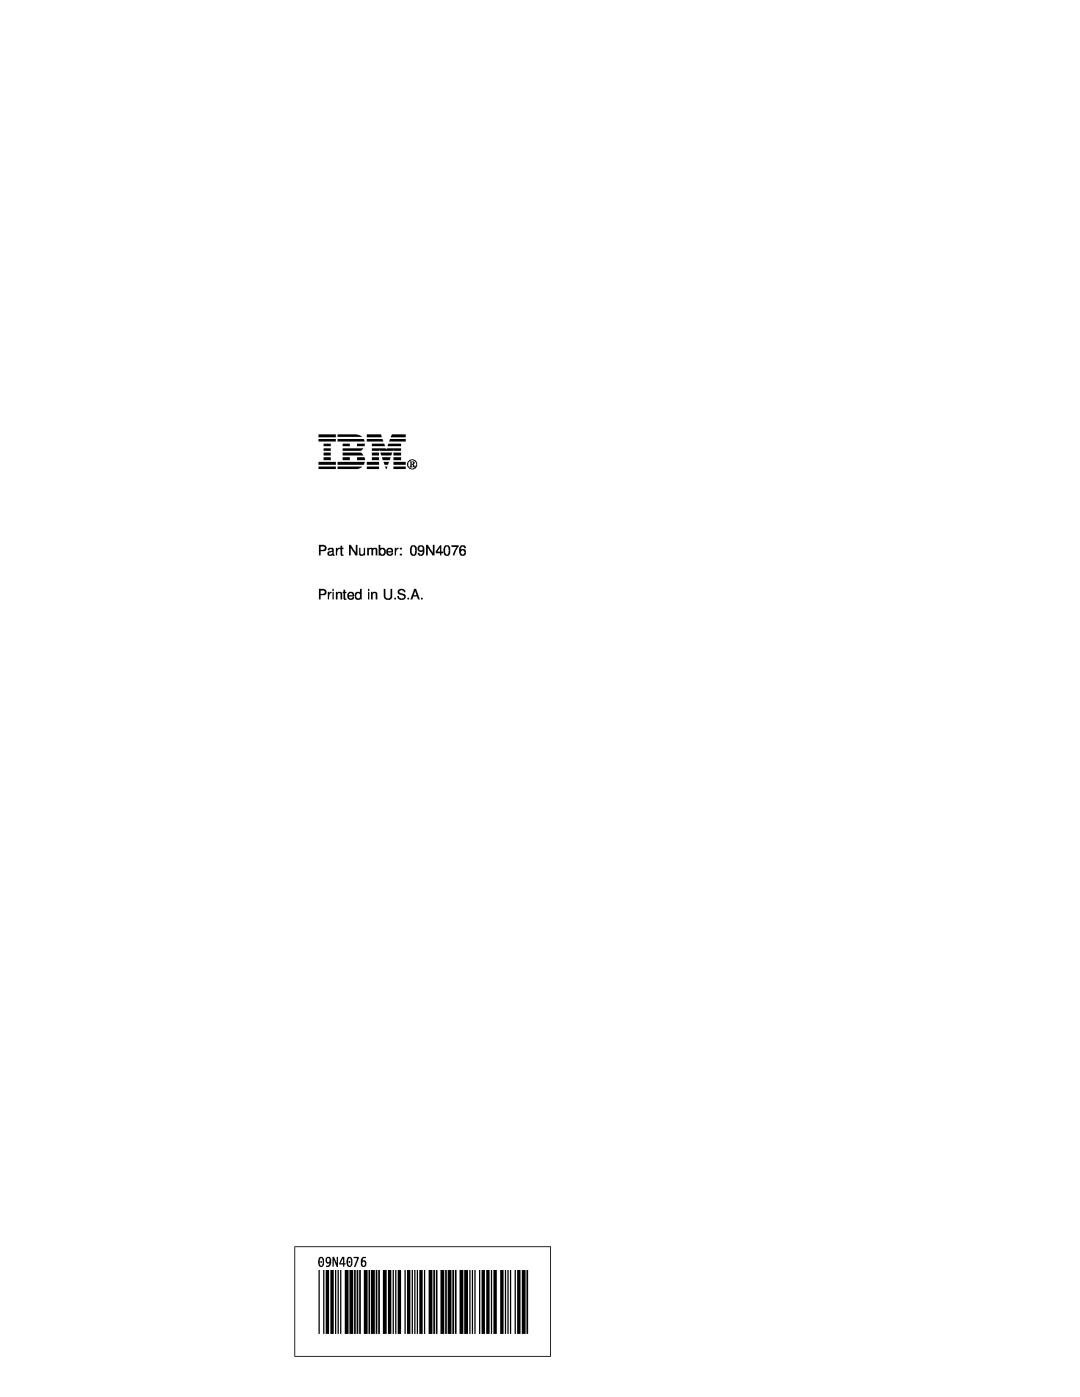 IBM manual Ibm, Part Number 09N4076 Printed in U.S.A, ð9N4ð76 